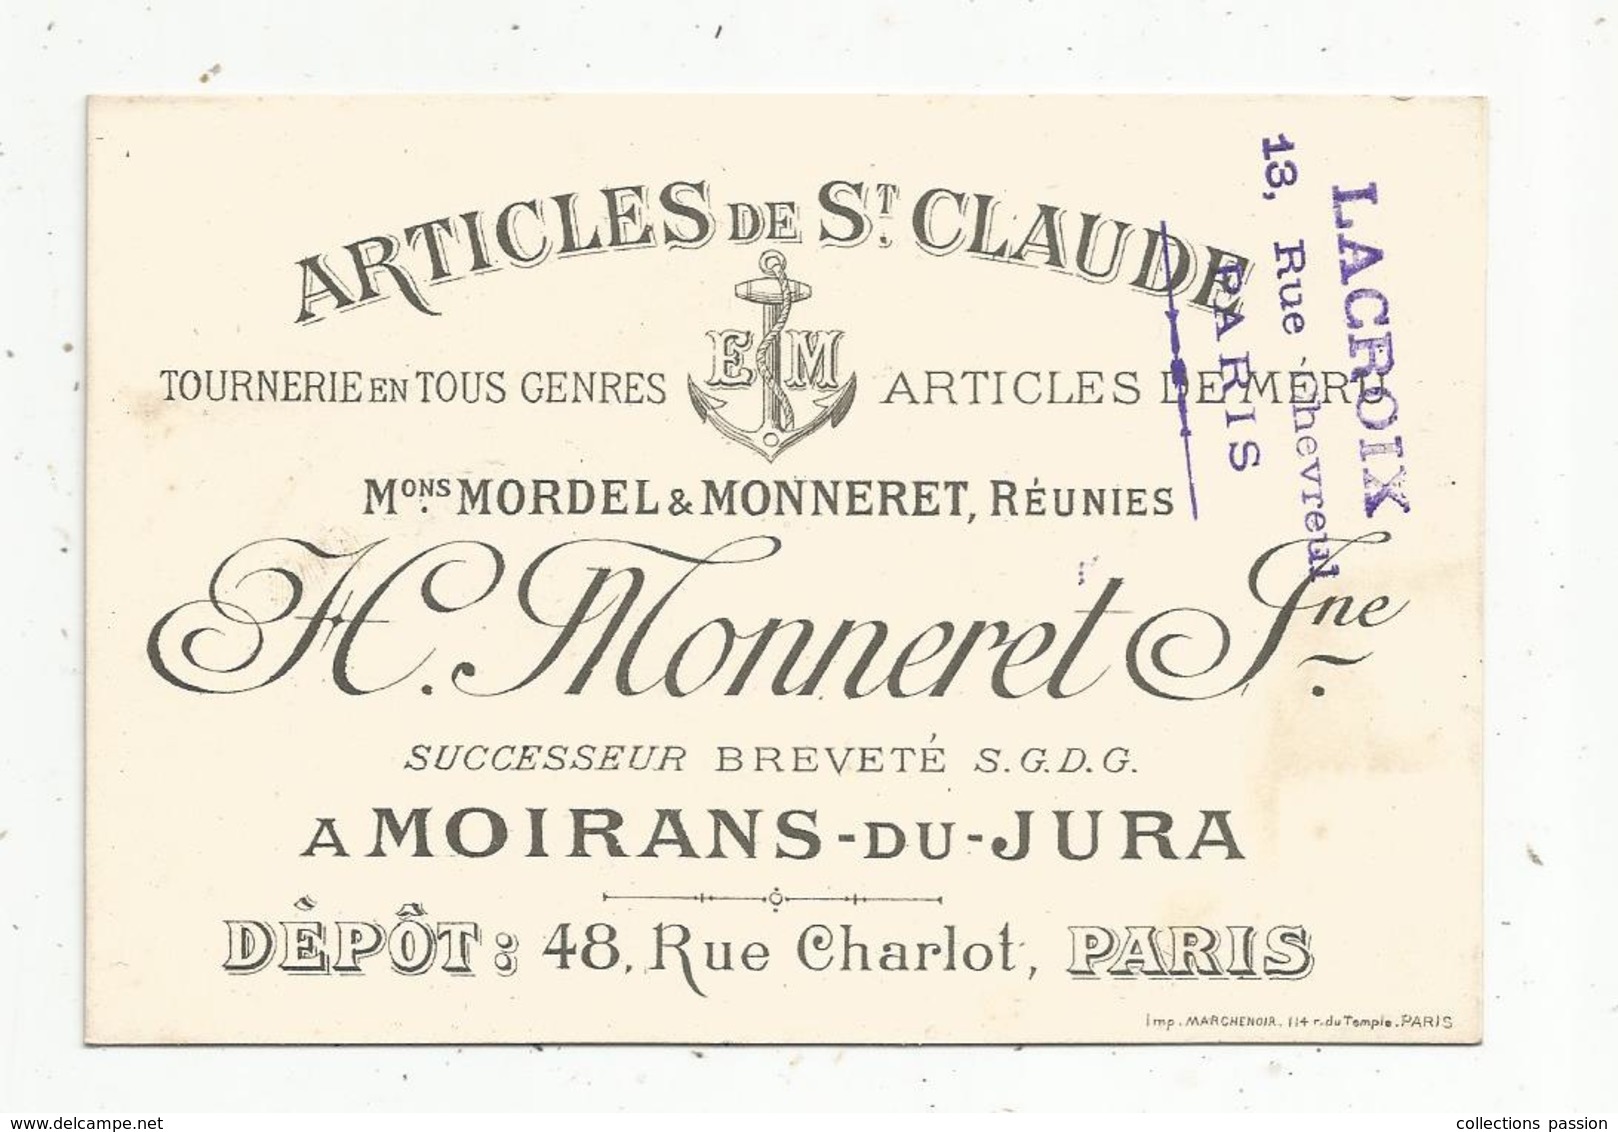 Carte De Visite , Articles De St Claude ,H. Monneret Jeune ,MOIRANS DU JURA ,dépot : Paris - Cartes De Visite